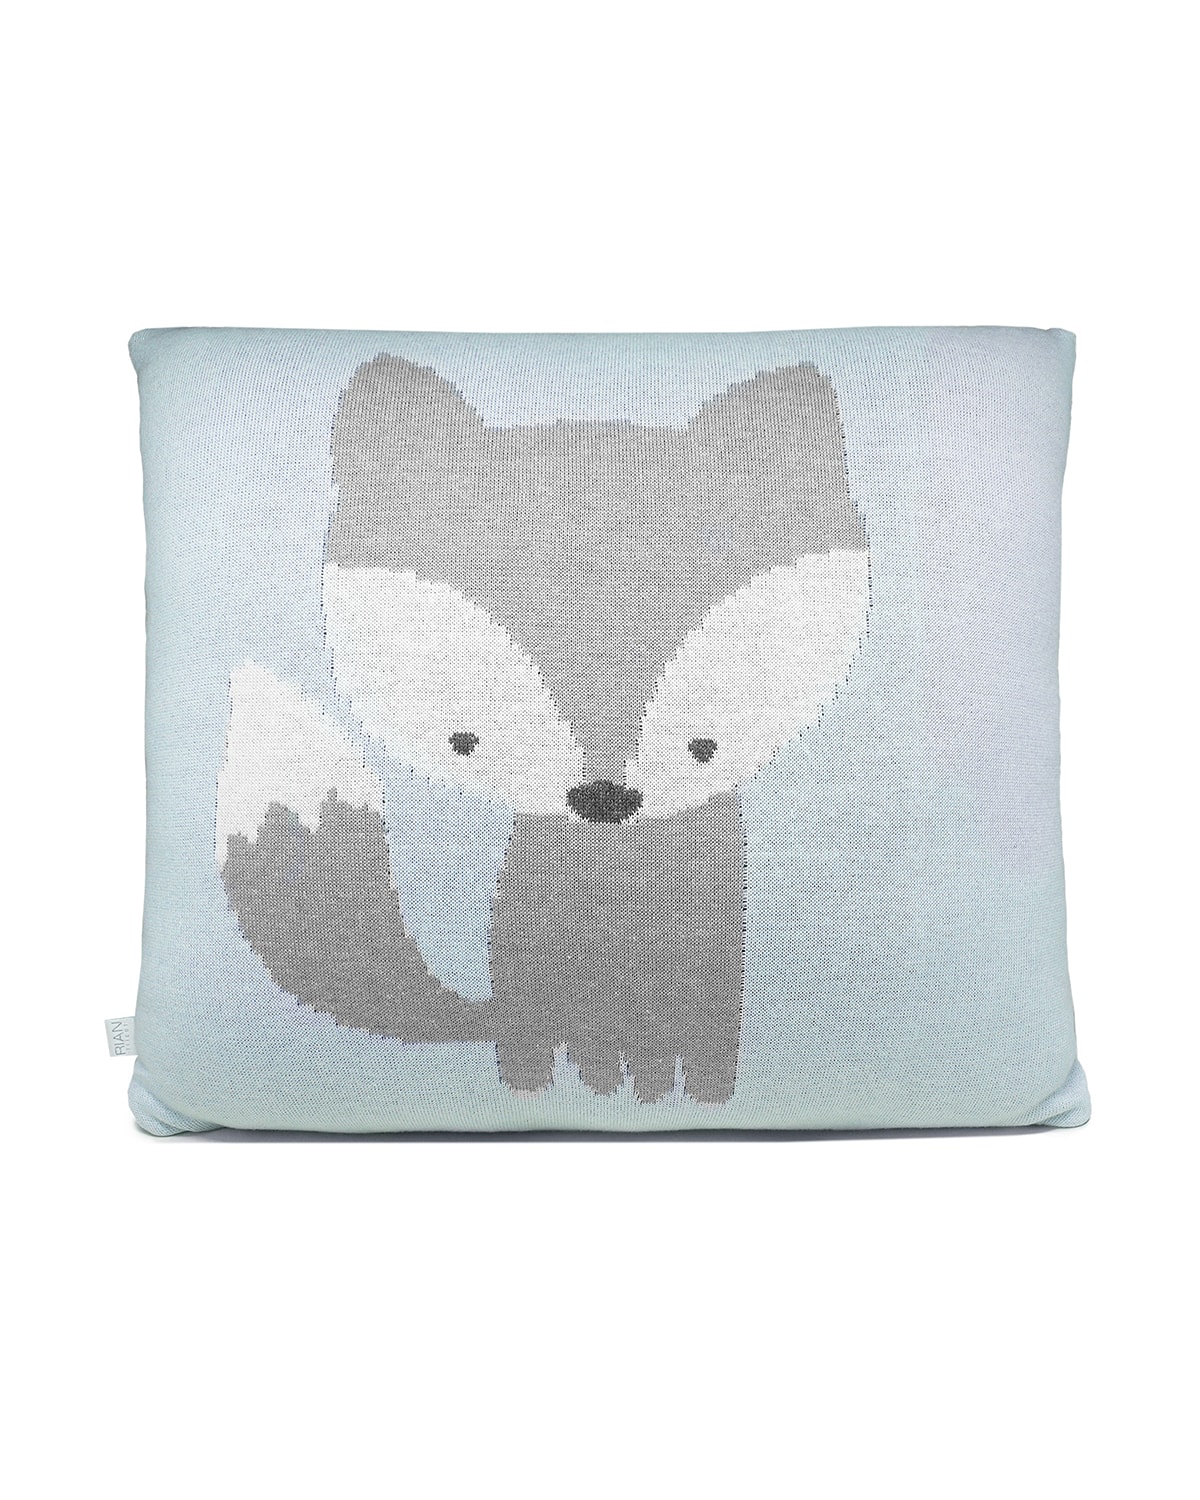 Rian Tricot Fox Pillow